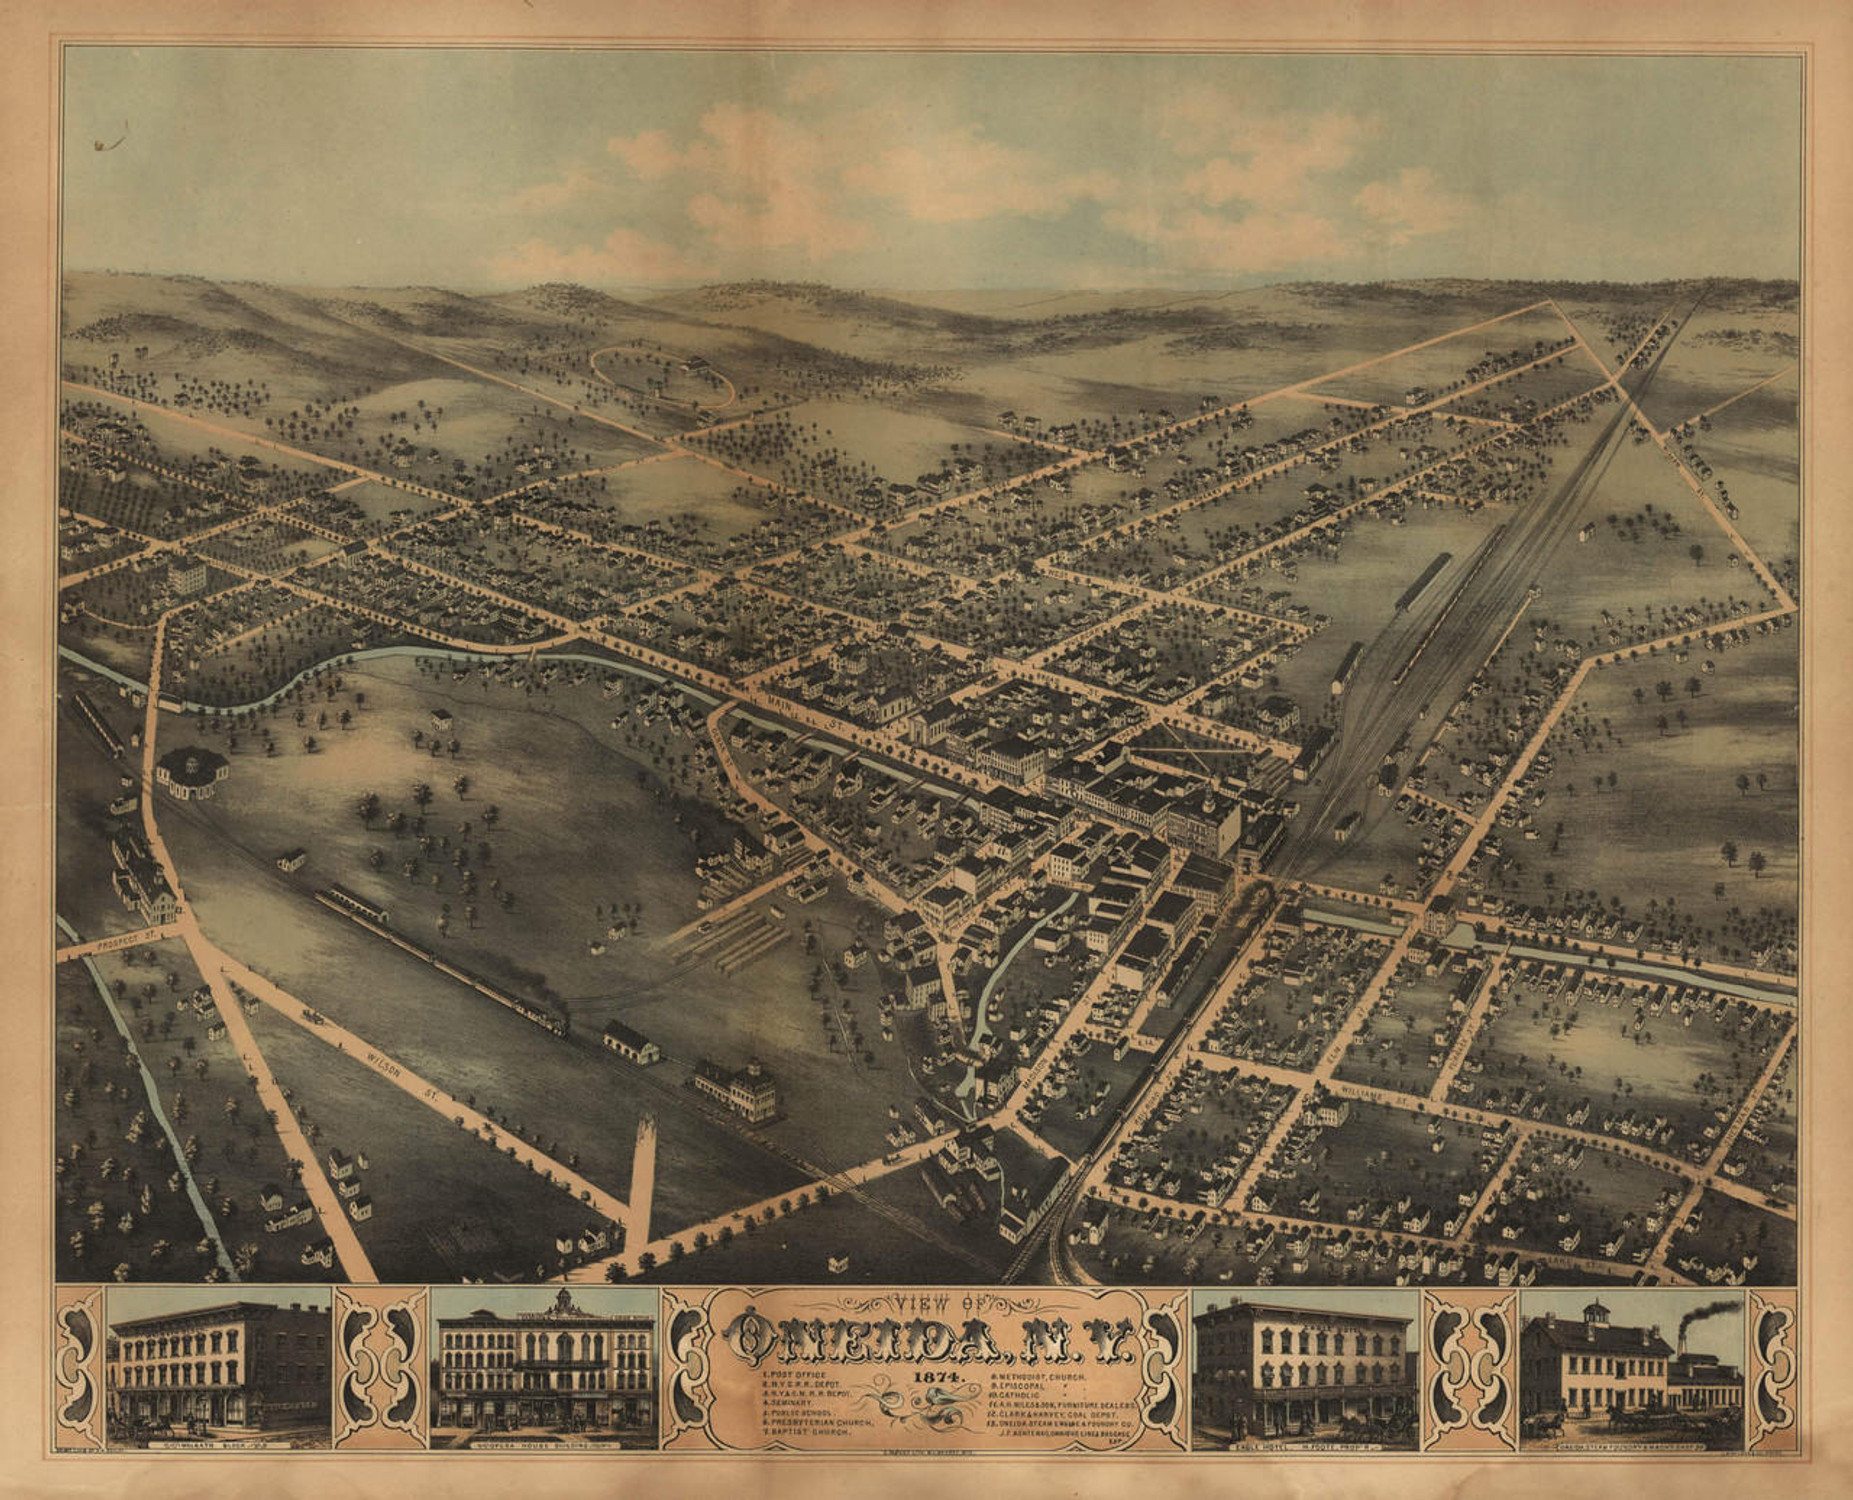 Historic Map - Oneida, NY - 1874, image 1, World Maps Online